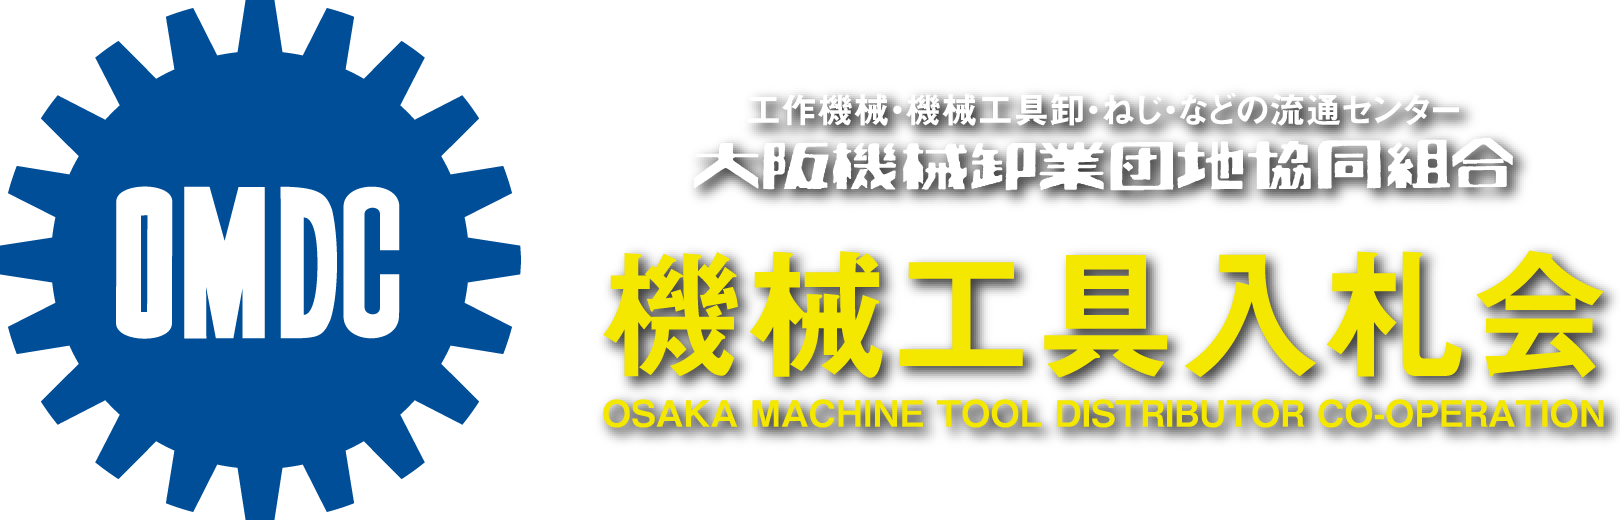 大阪機械卸業団地 機械工具入札会